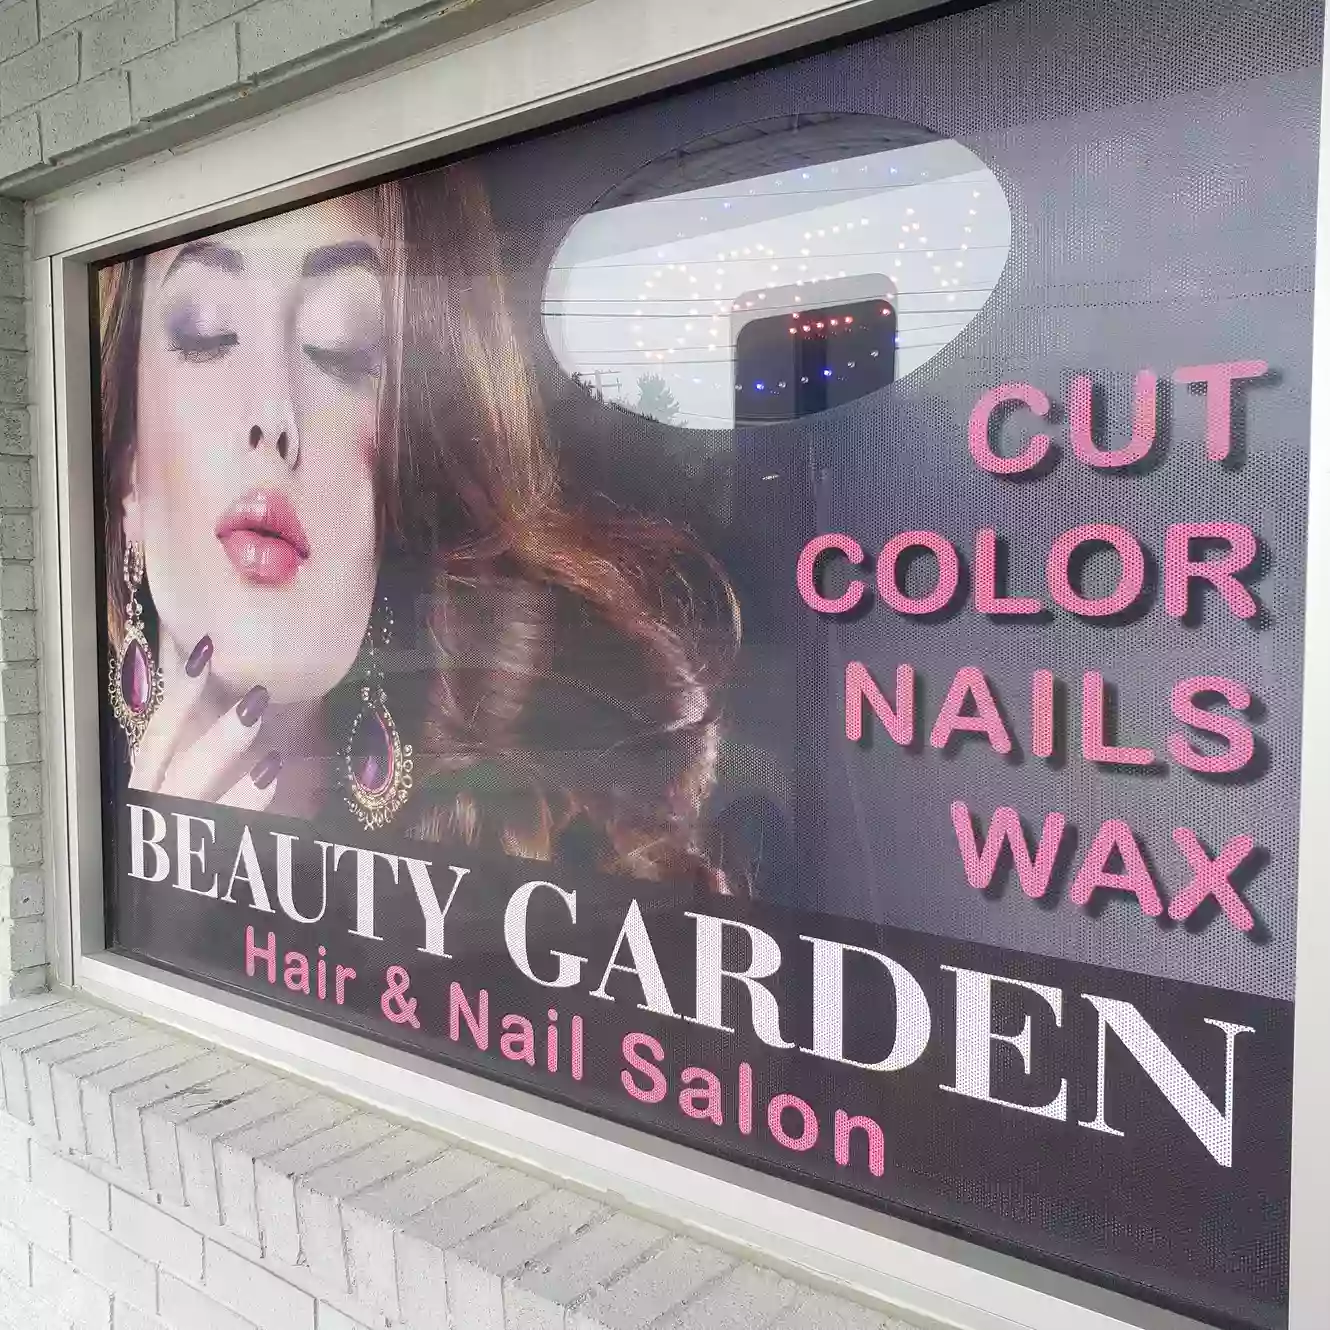 Beauty Garden Hair & Nail salon